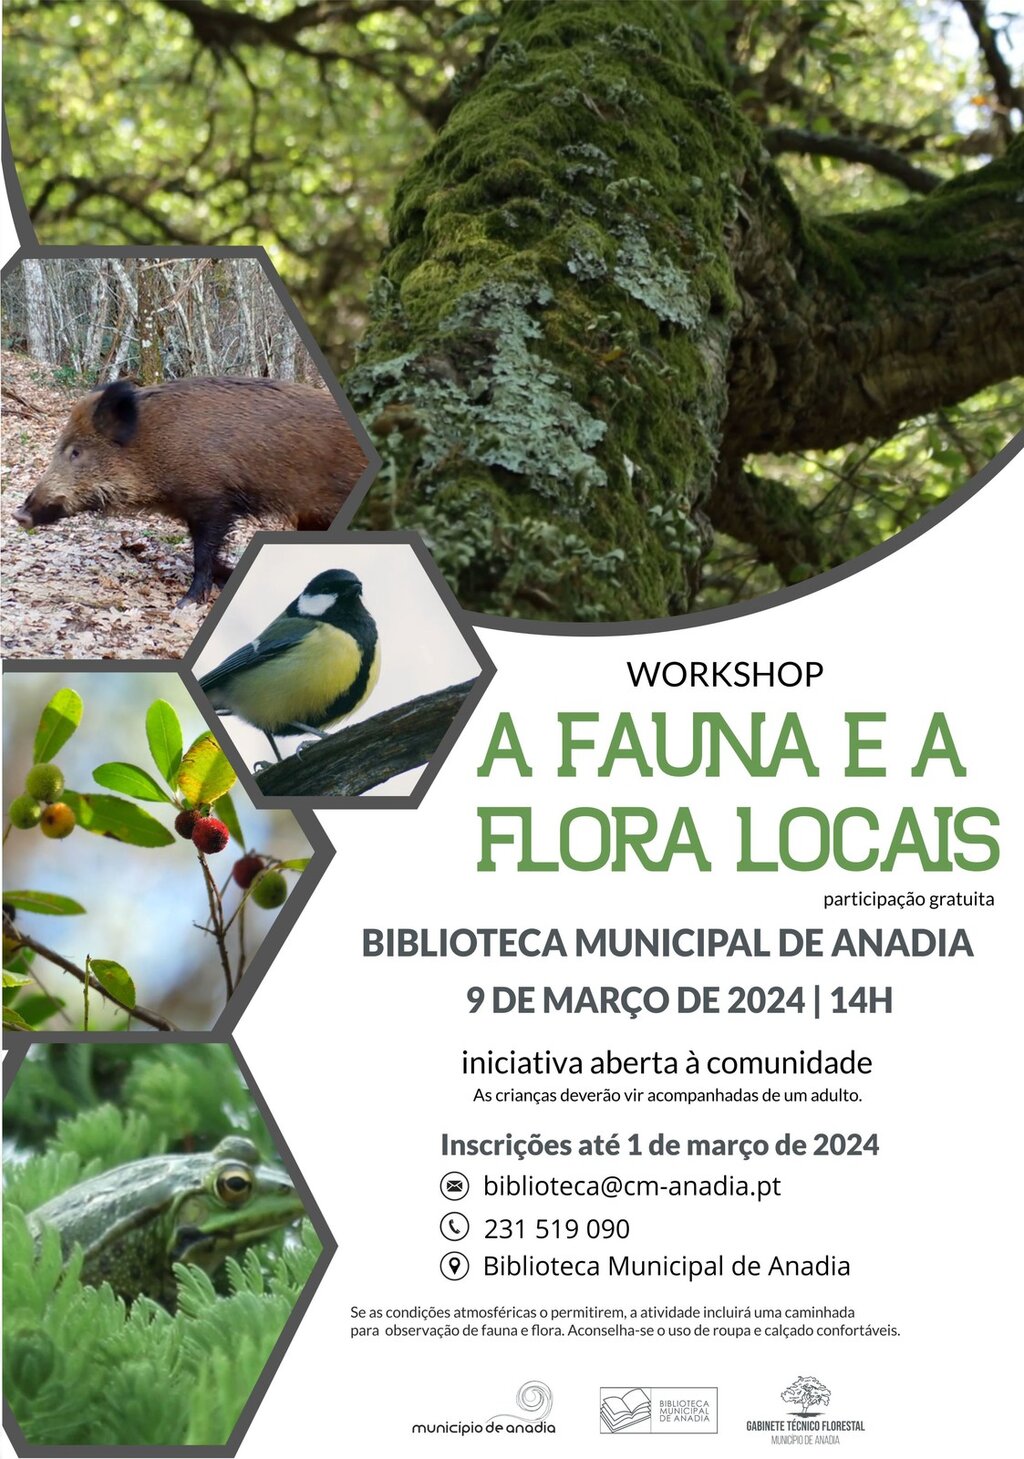 Workshop "A Fauna e a Flora Locais"